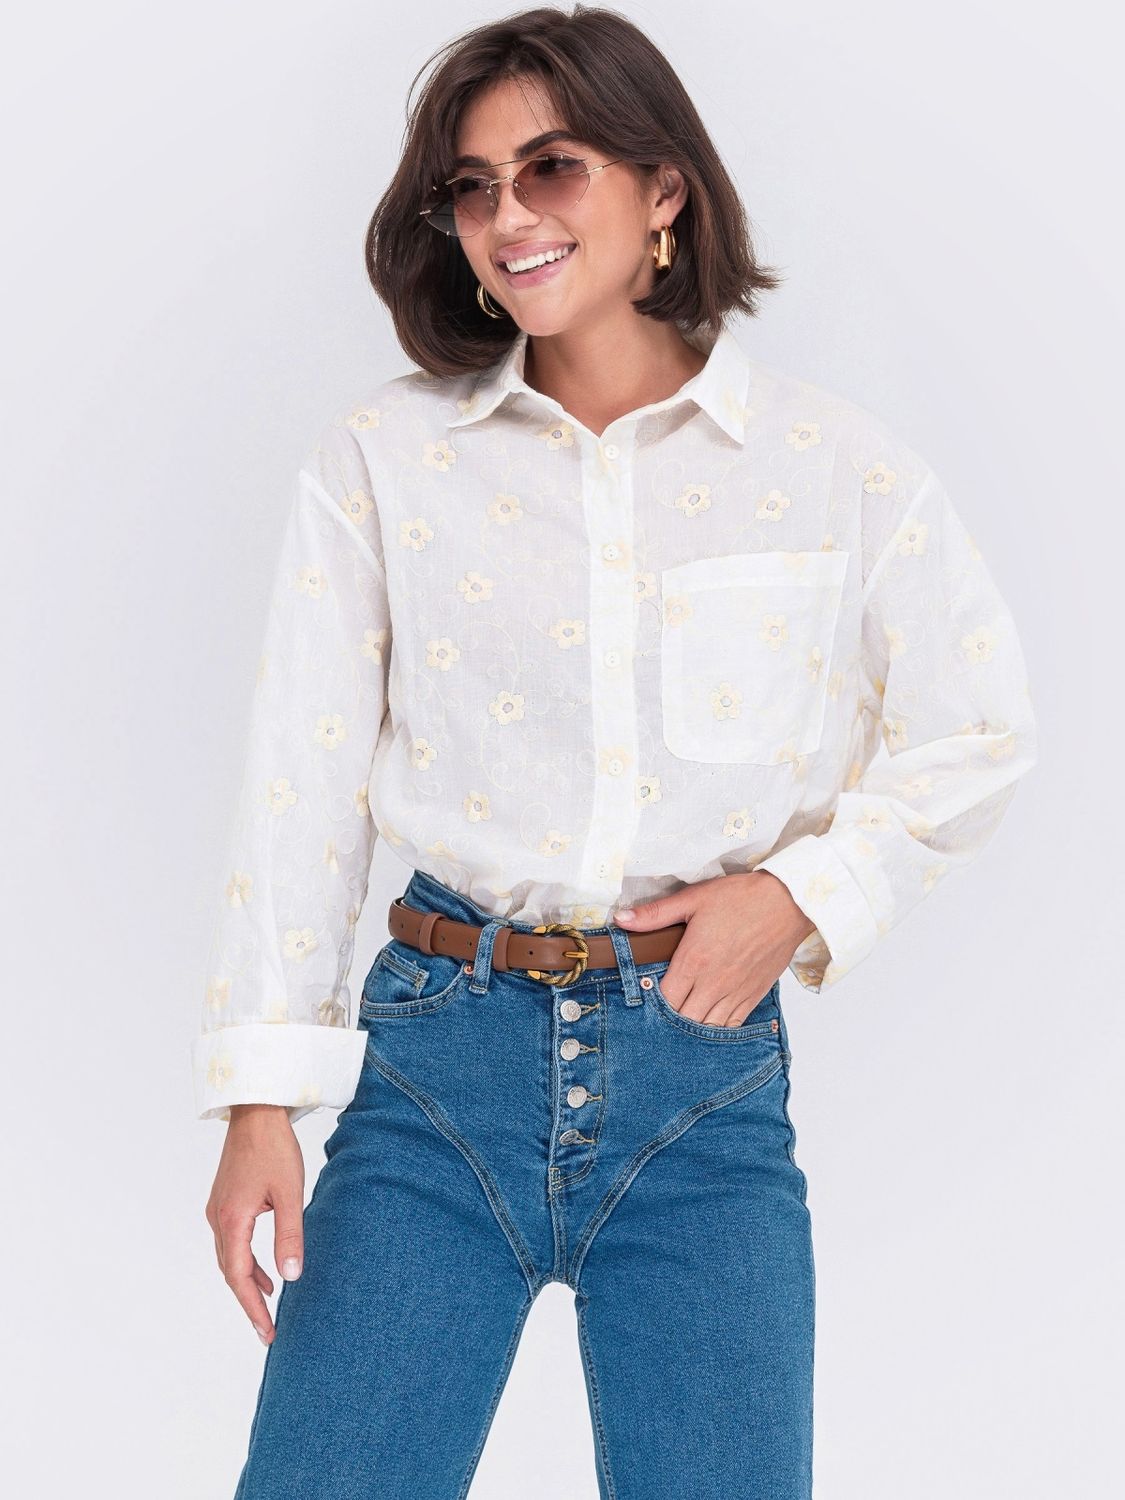 Нарядная женская рубашка оверсайз с вышивкой - фото